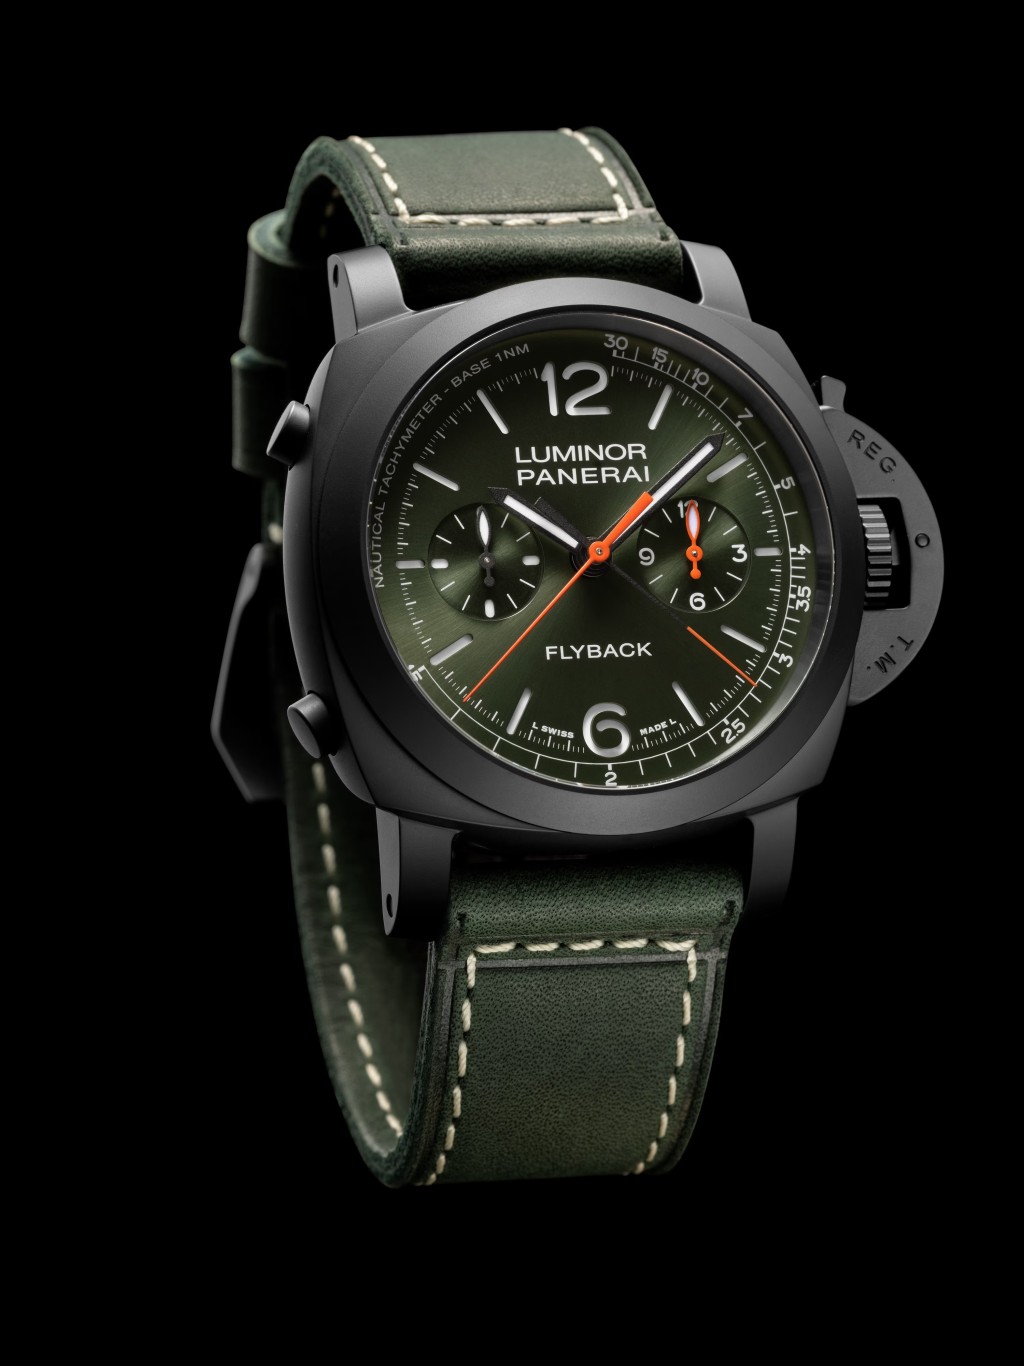 品牌近期最有軍錶味道的PAM01498。